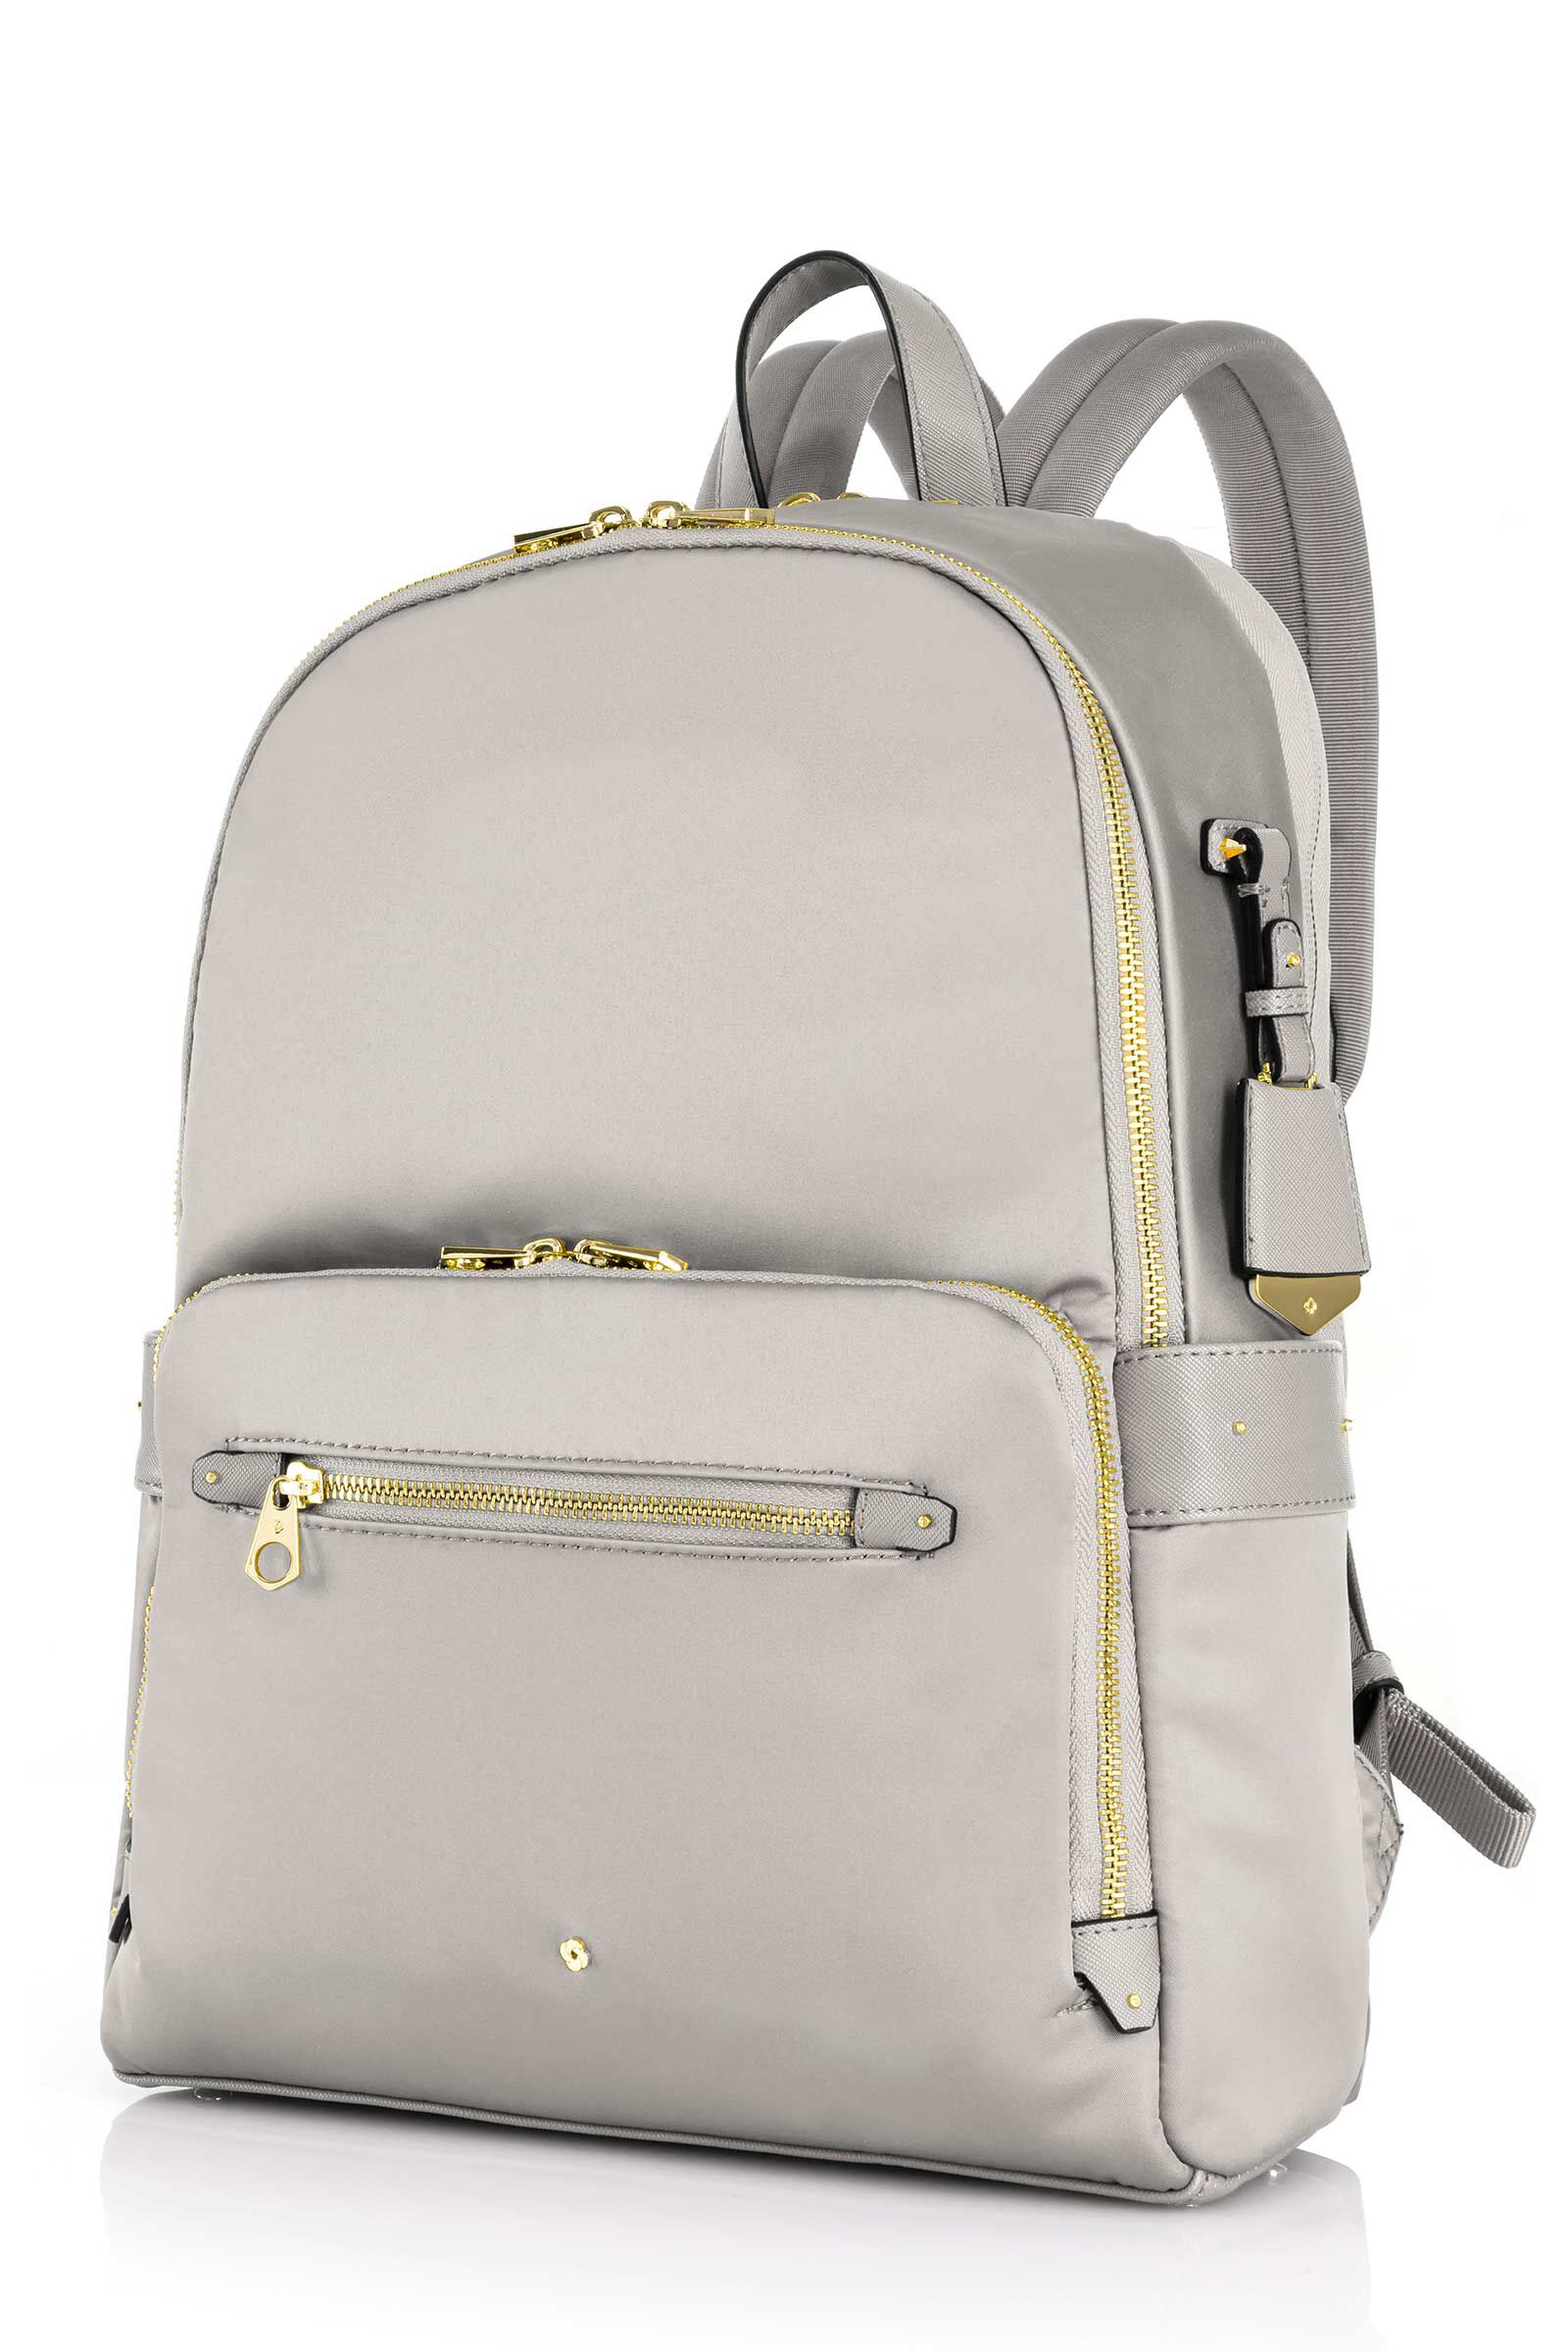 Samsonite Aquarius Backpack